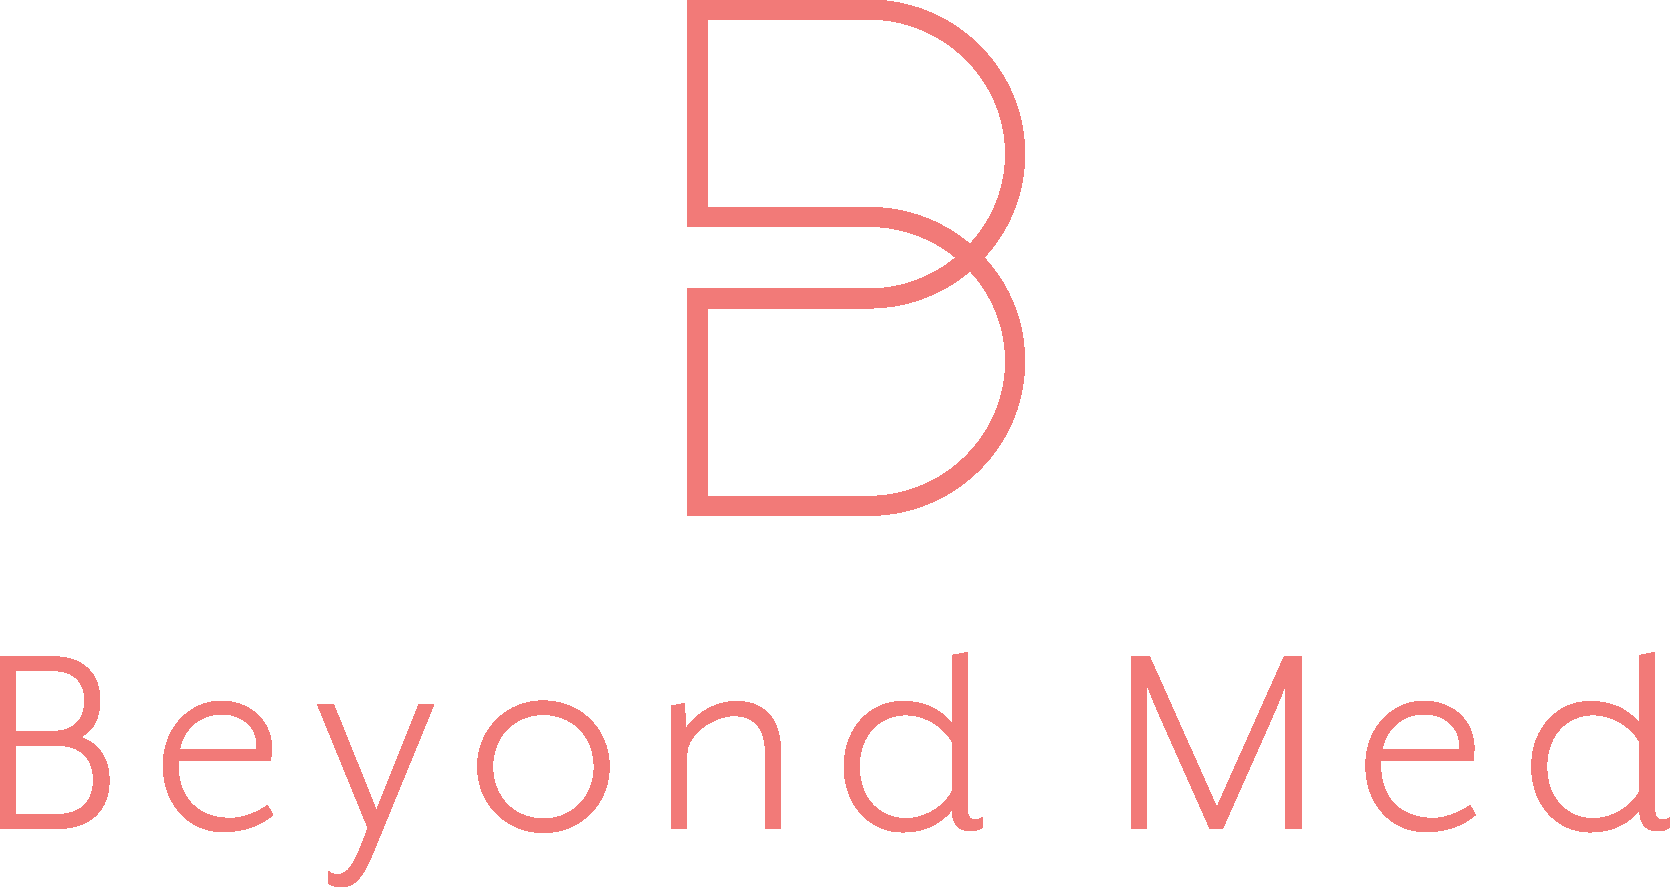 Beyond Med Logo